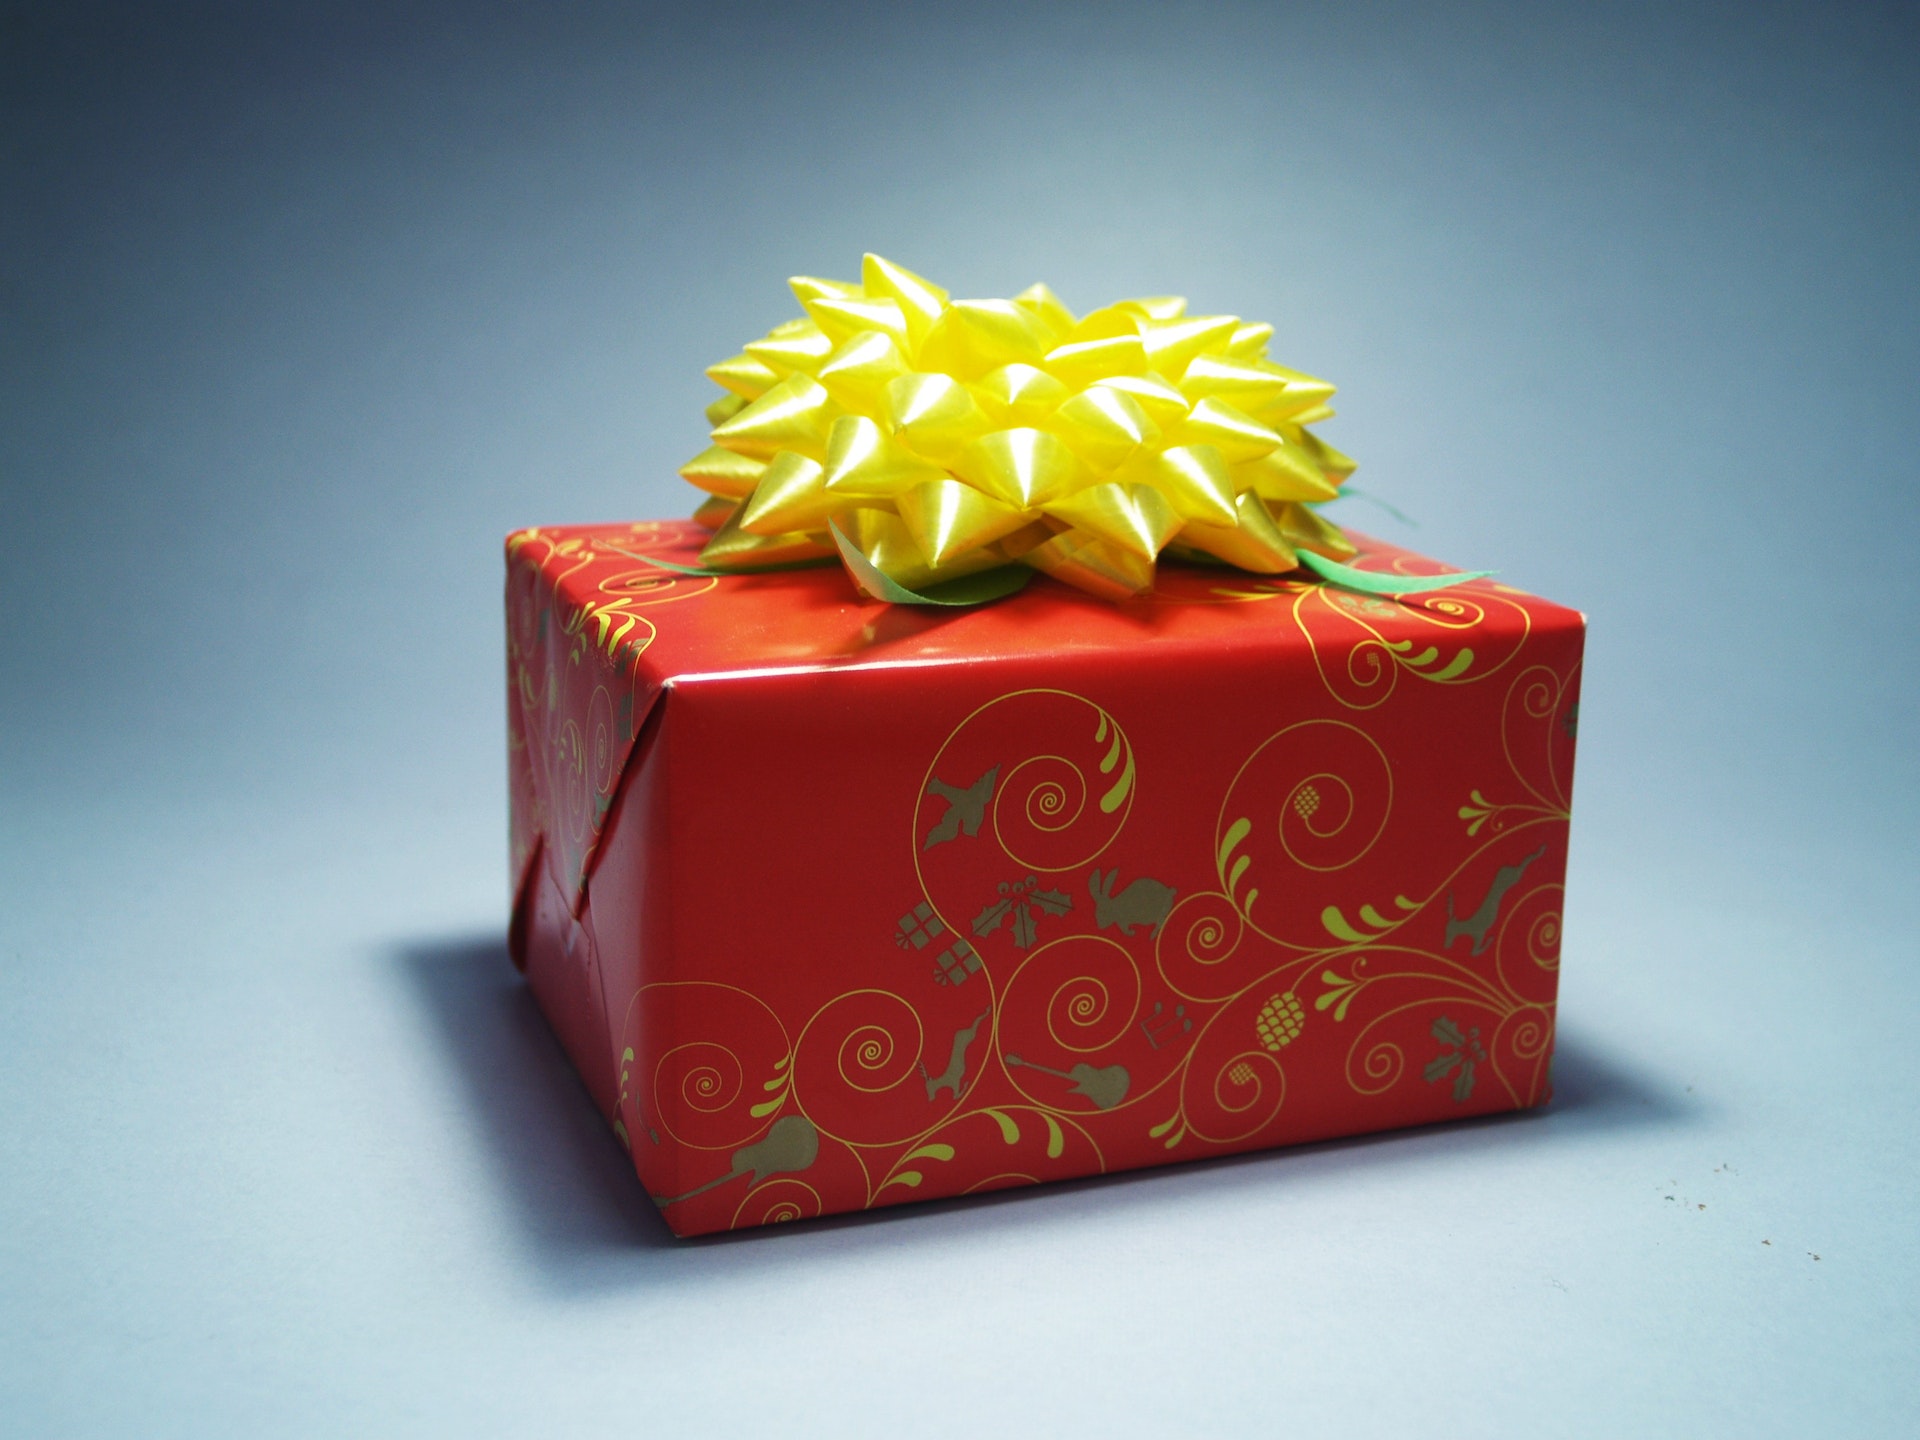 Un paquet cadeau | Source : Pexels